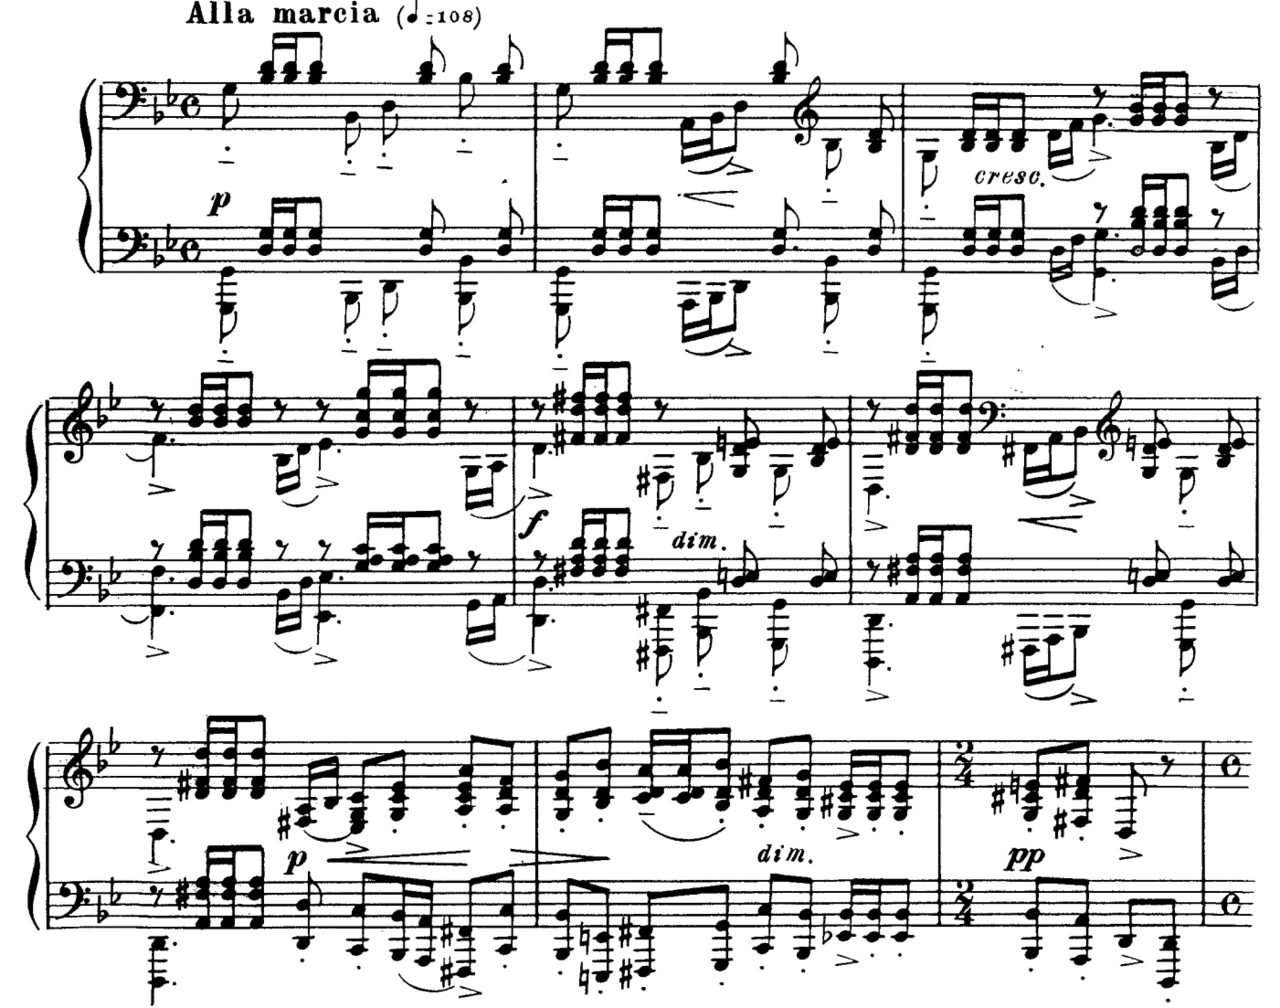 74 ポイントテクニック動画 和音やオクターブで タタタッ と短く連打するときの注意点や練習方法 さいりえ ピアニスト ピアノレッスン Note